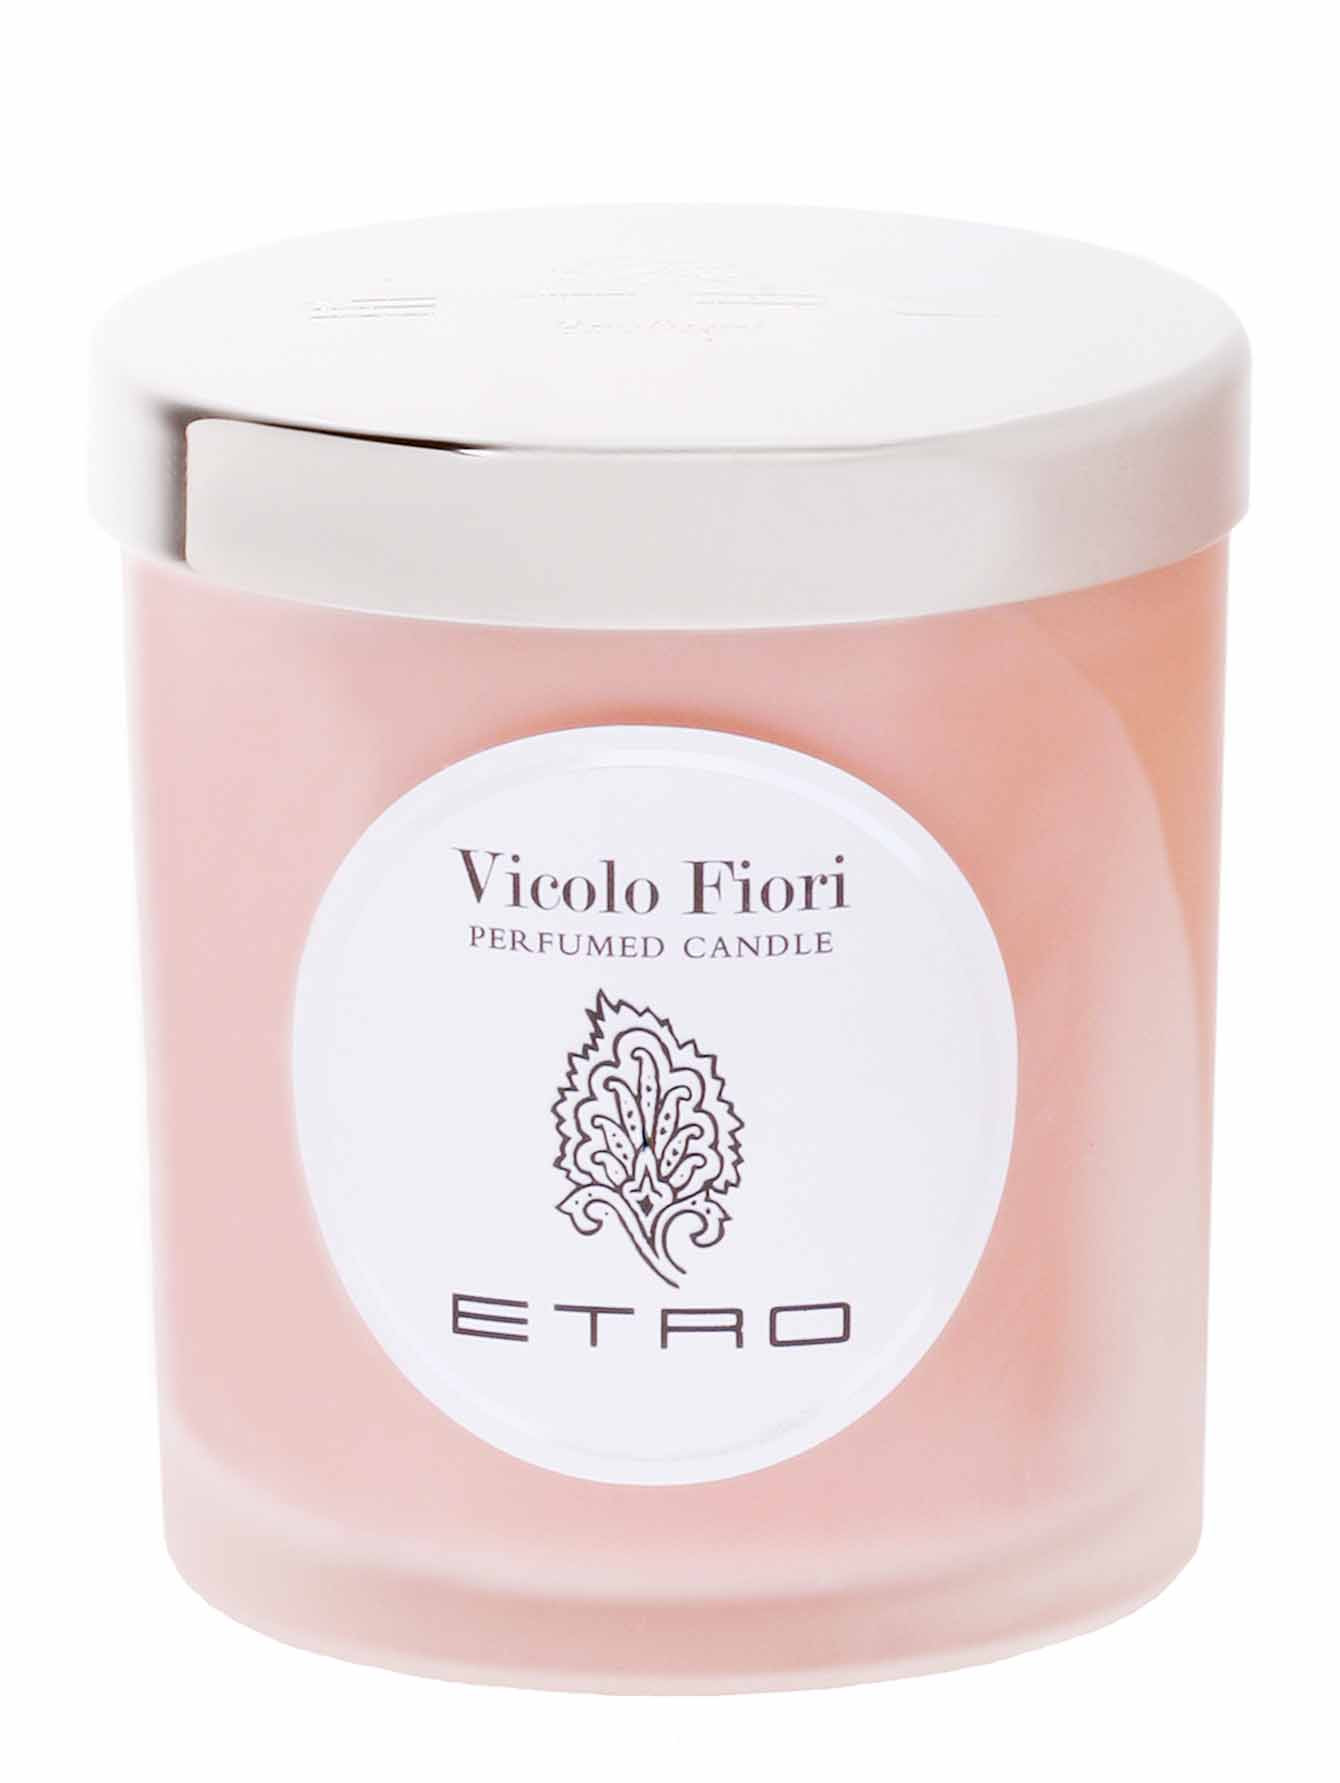 Парфюмированная свеча Vicolo Fiori, 160 г - Общий вид